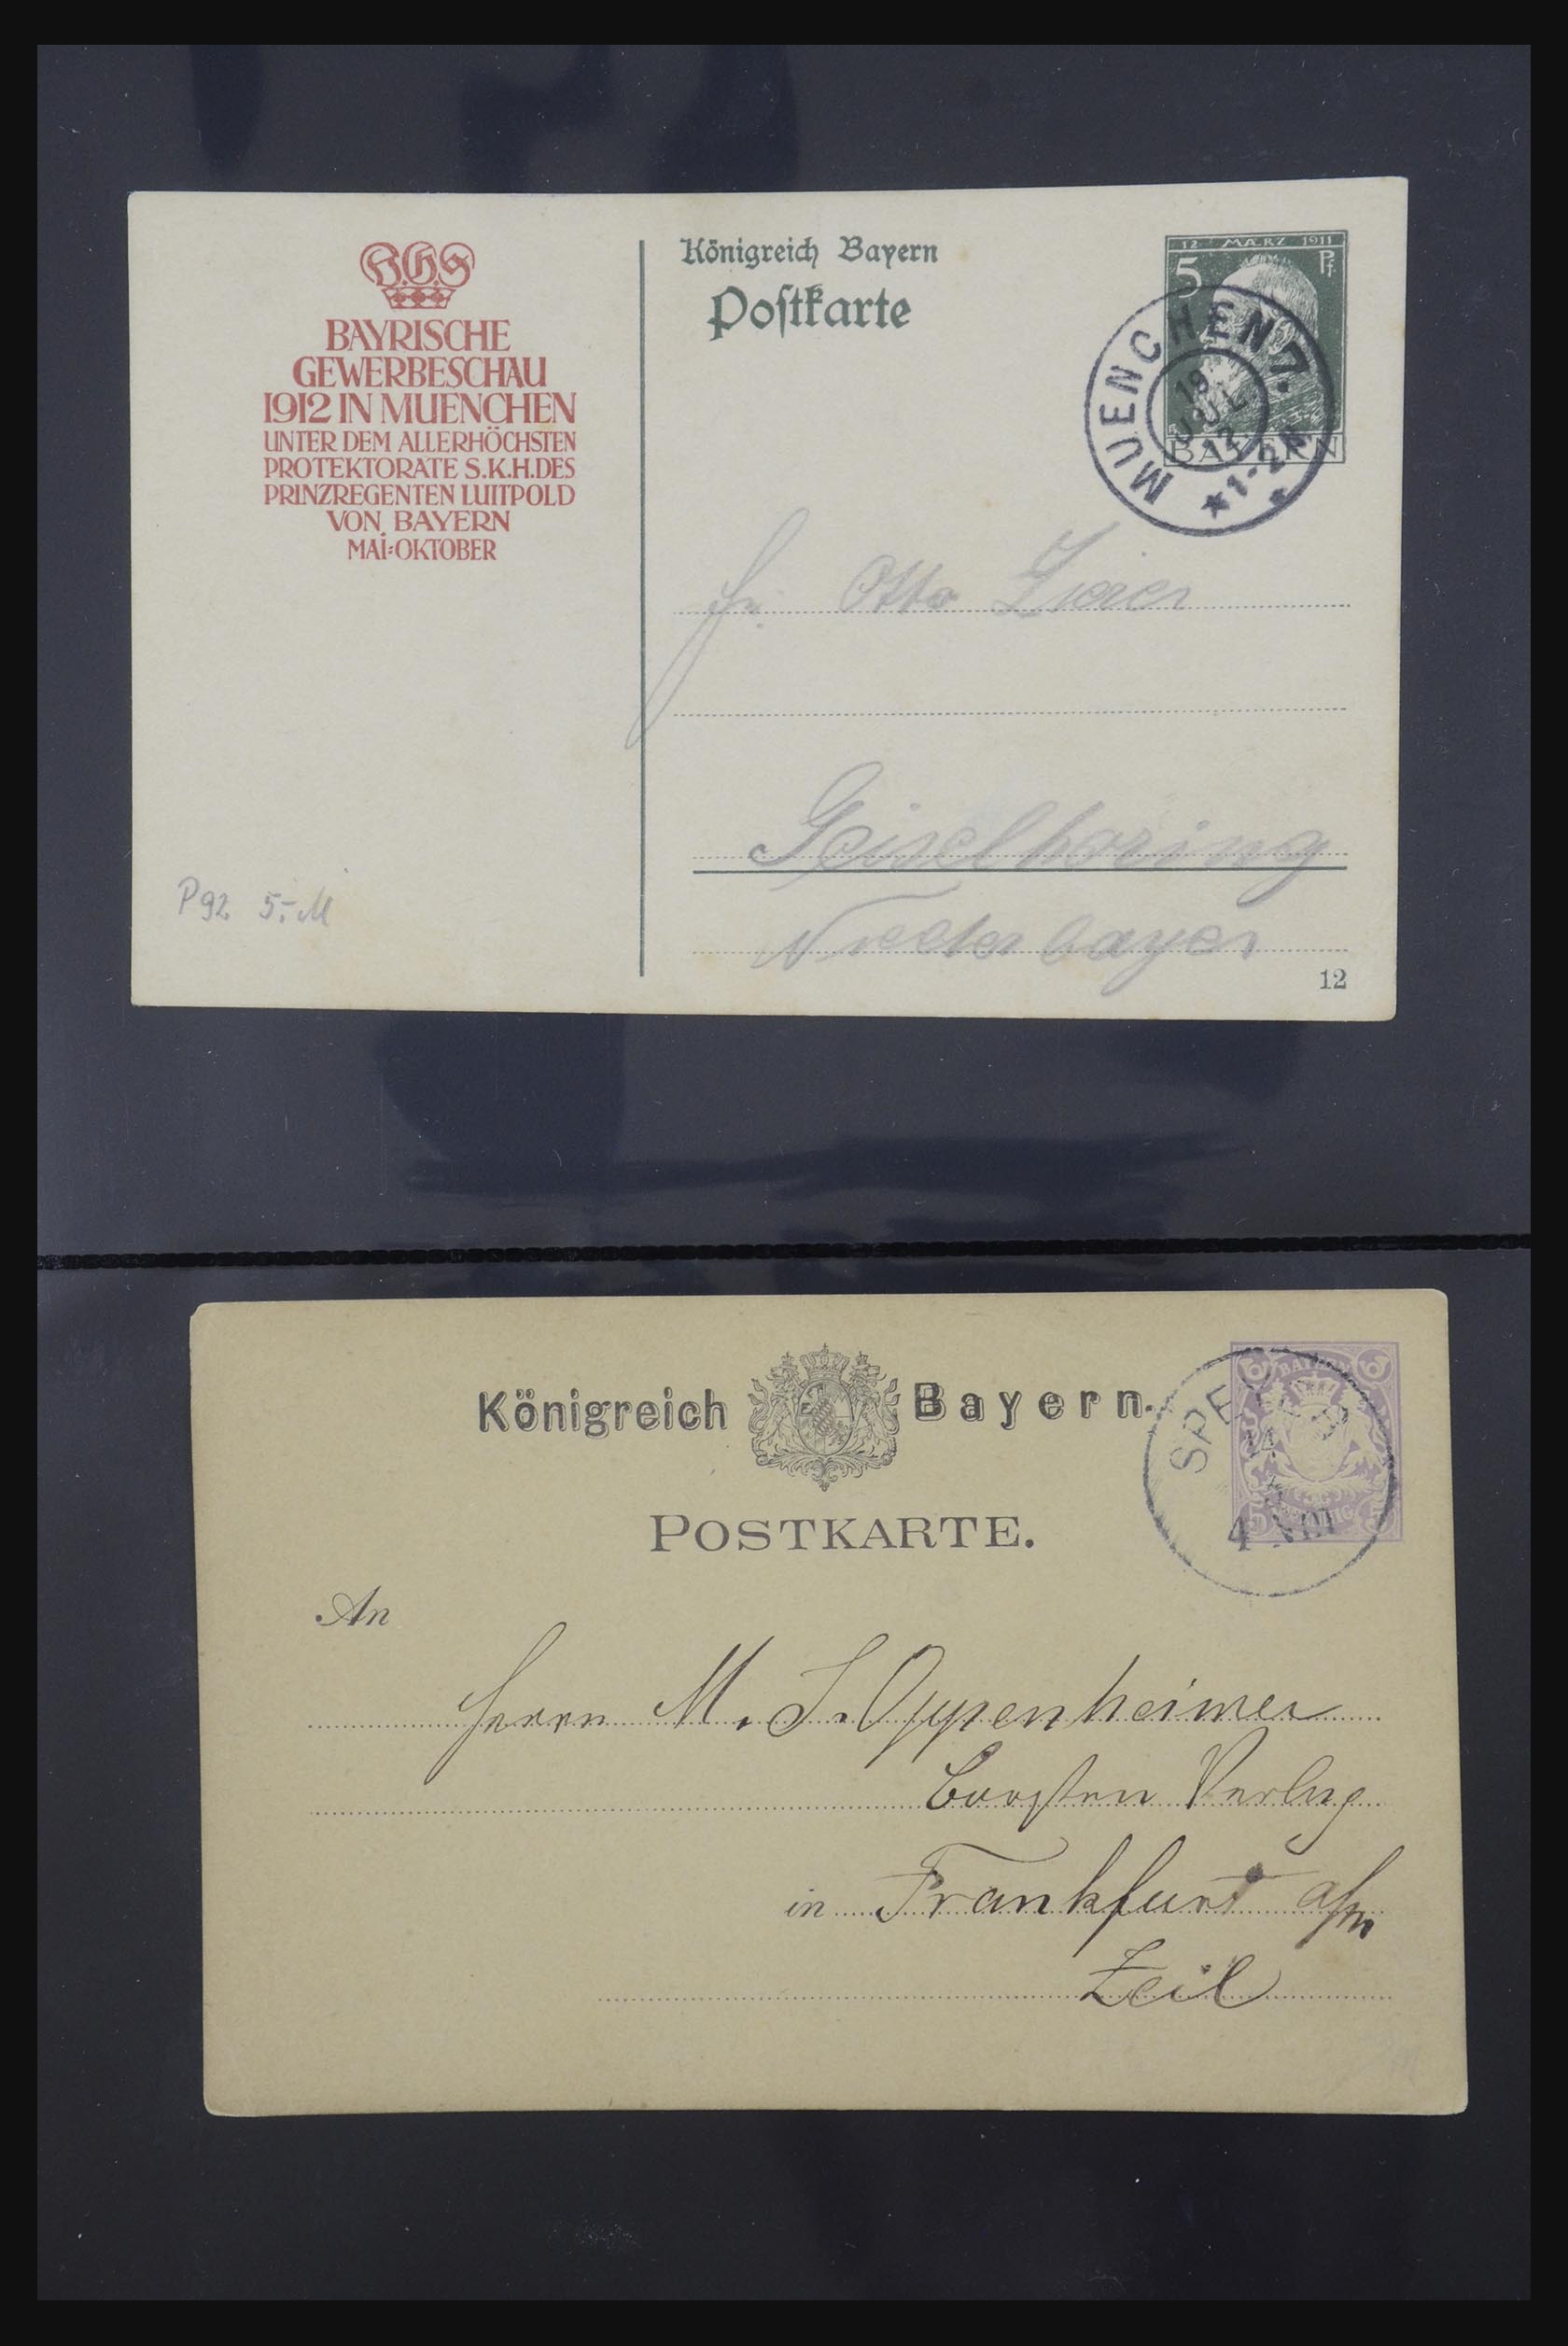 31952 434 - 31952 German Reich cards.